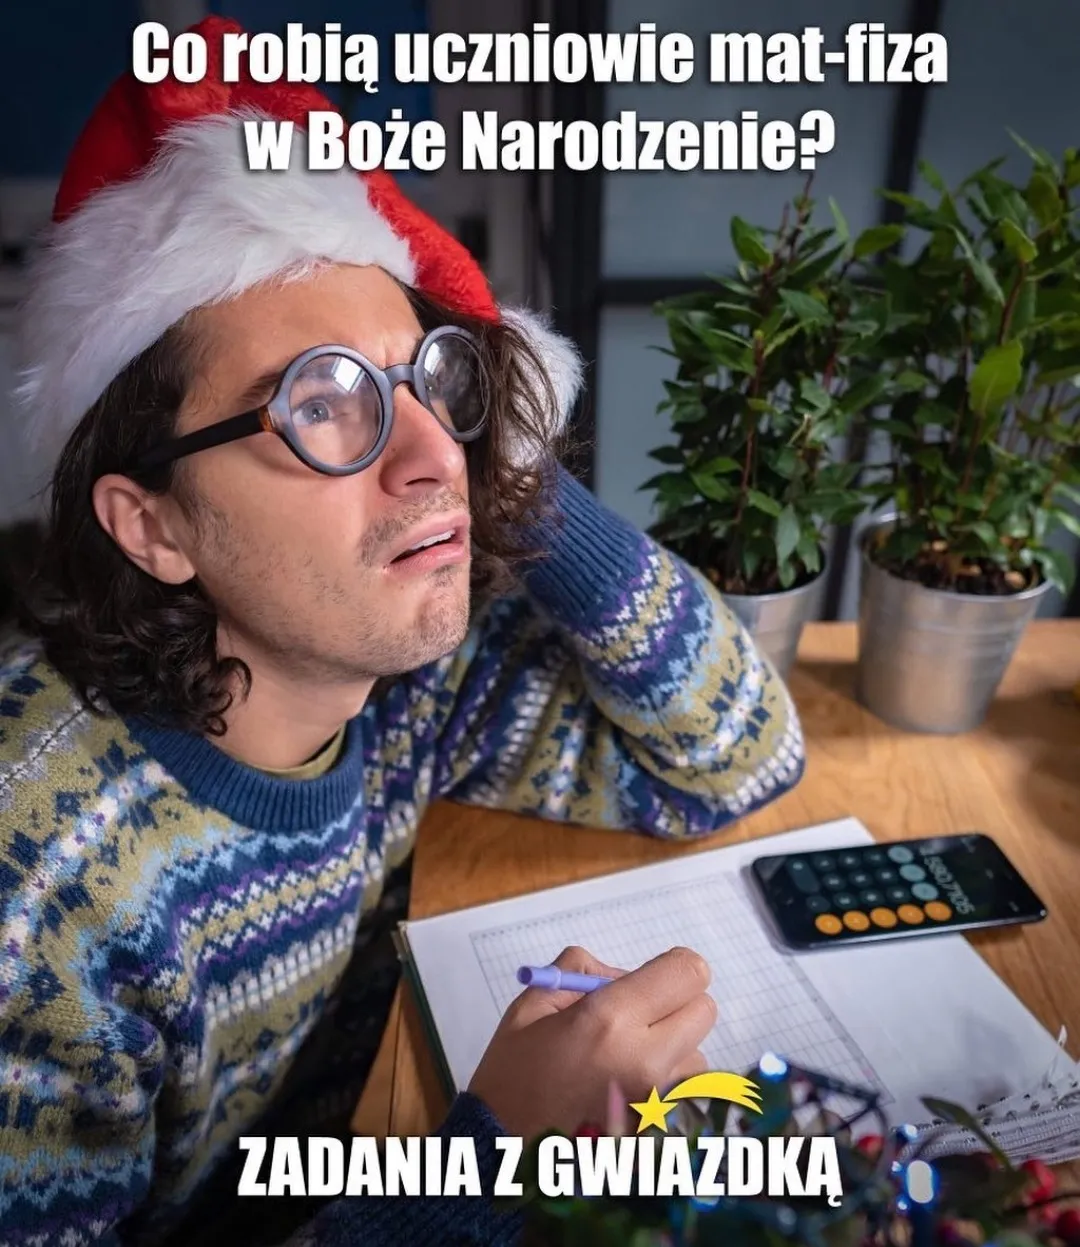 Mem przedstawiający osobę, która wykonuje zadania z matematyki: 'Co robią uczniowie mat-fiza w Boże Narodzenie? Zadania z gwiazdką'